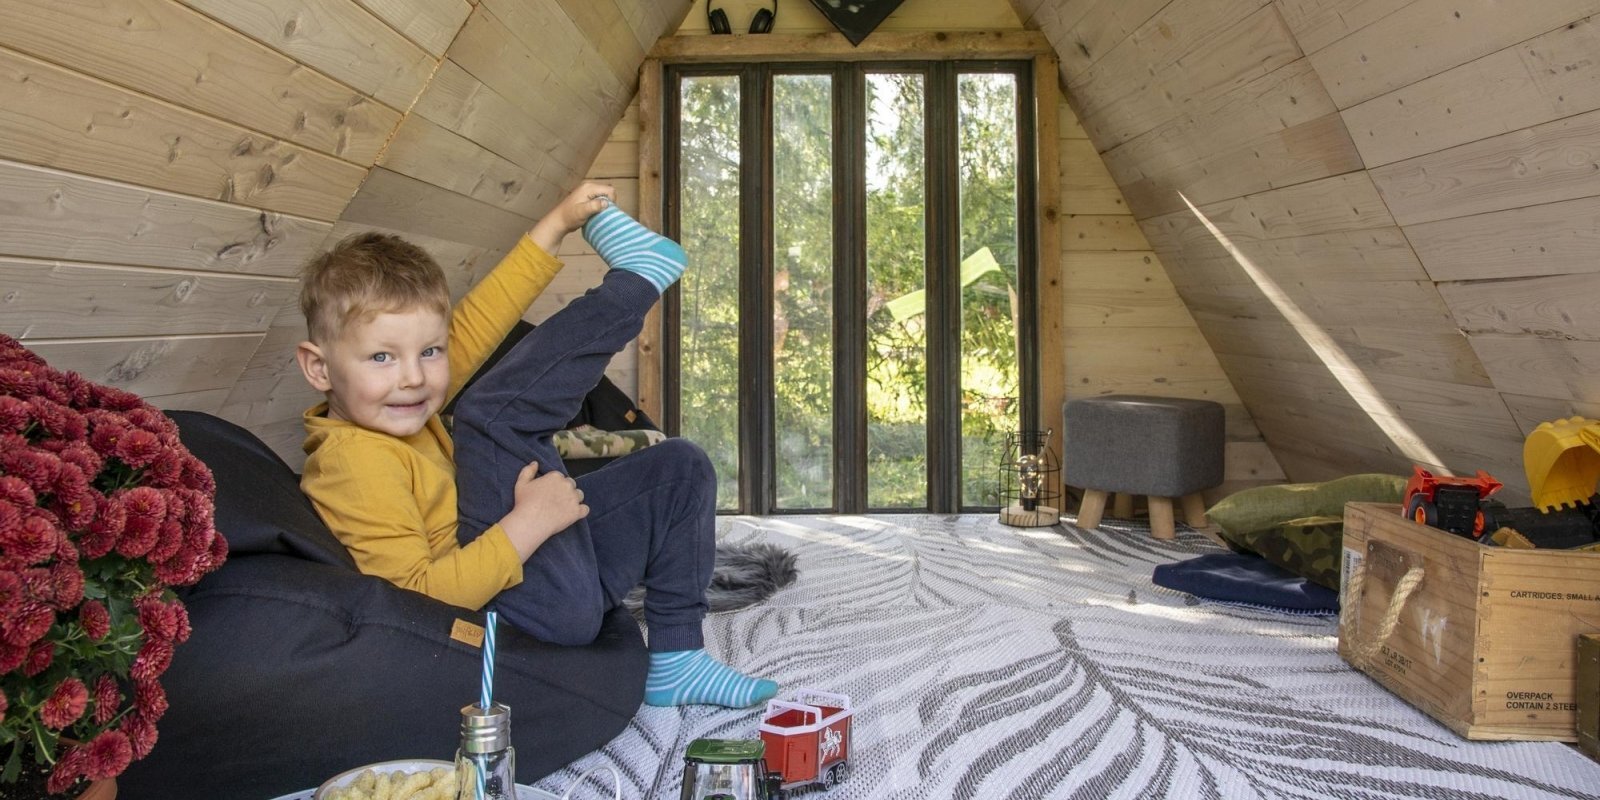 ФОТО. Легко и просто: Как построить игровой домик из поддонов для самых маленьких членов семьи